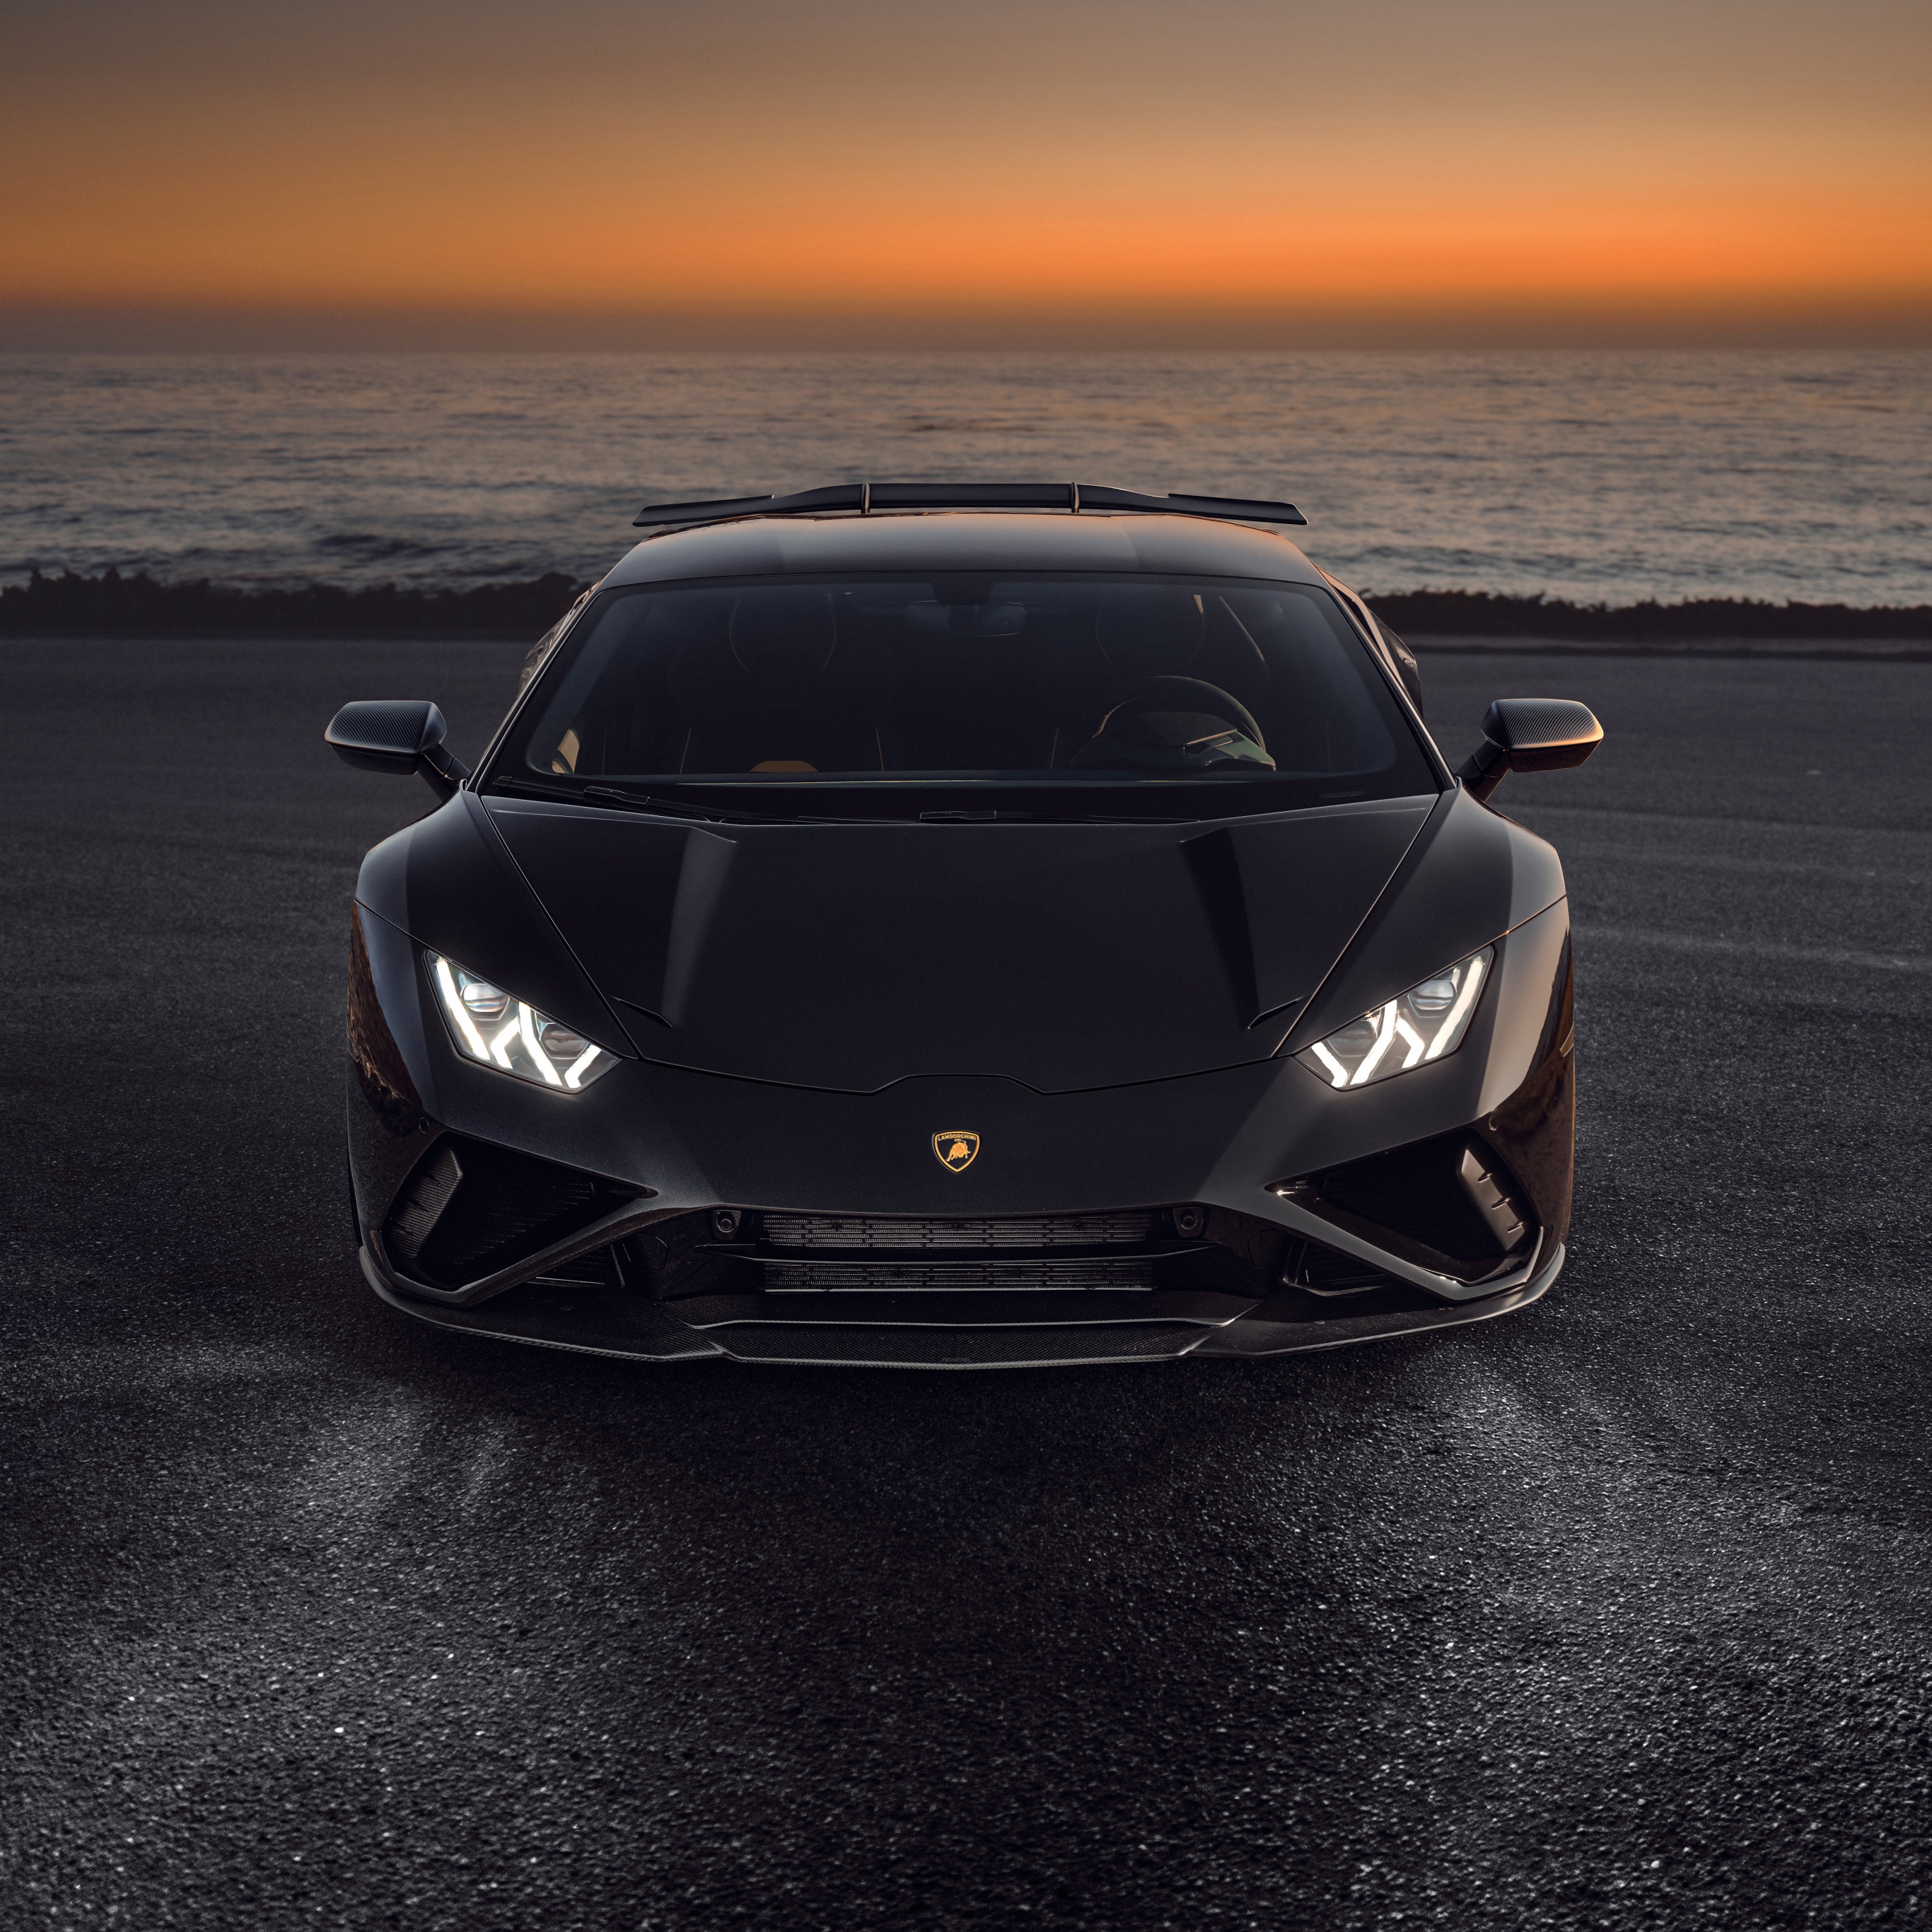 Novitec Lamborghini Huracán EVO RWD Wallpaper 4K, Black cars, Sunset, 5K, 8K, Cars